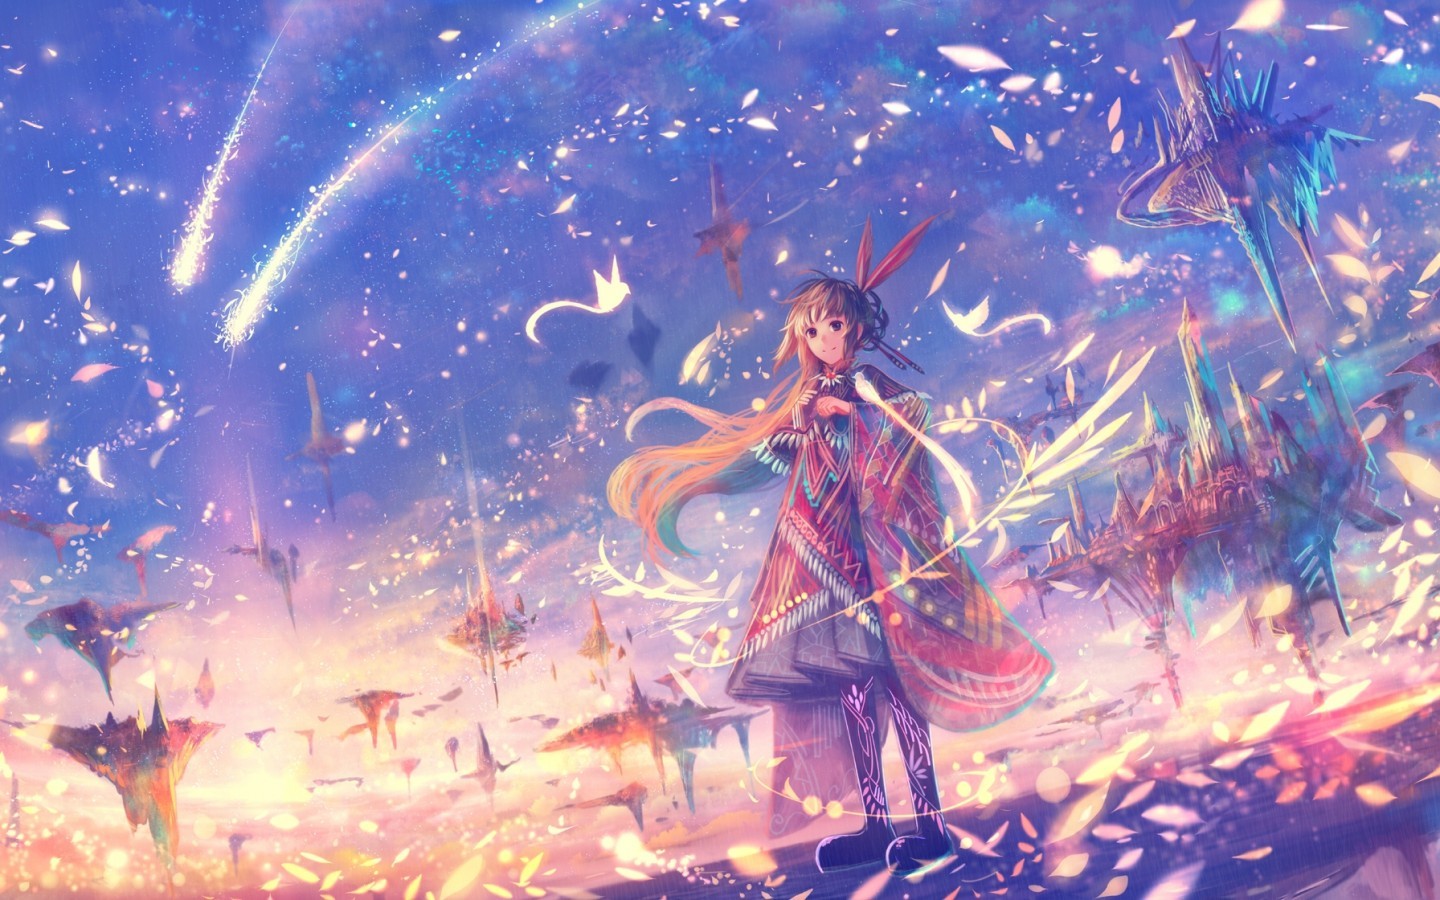 anime world wallpaper,cg artwork,sky,illustration,fictional character,art